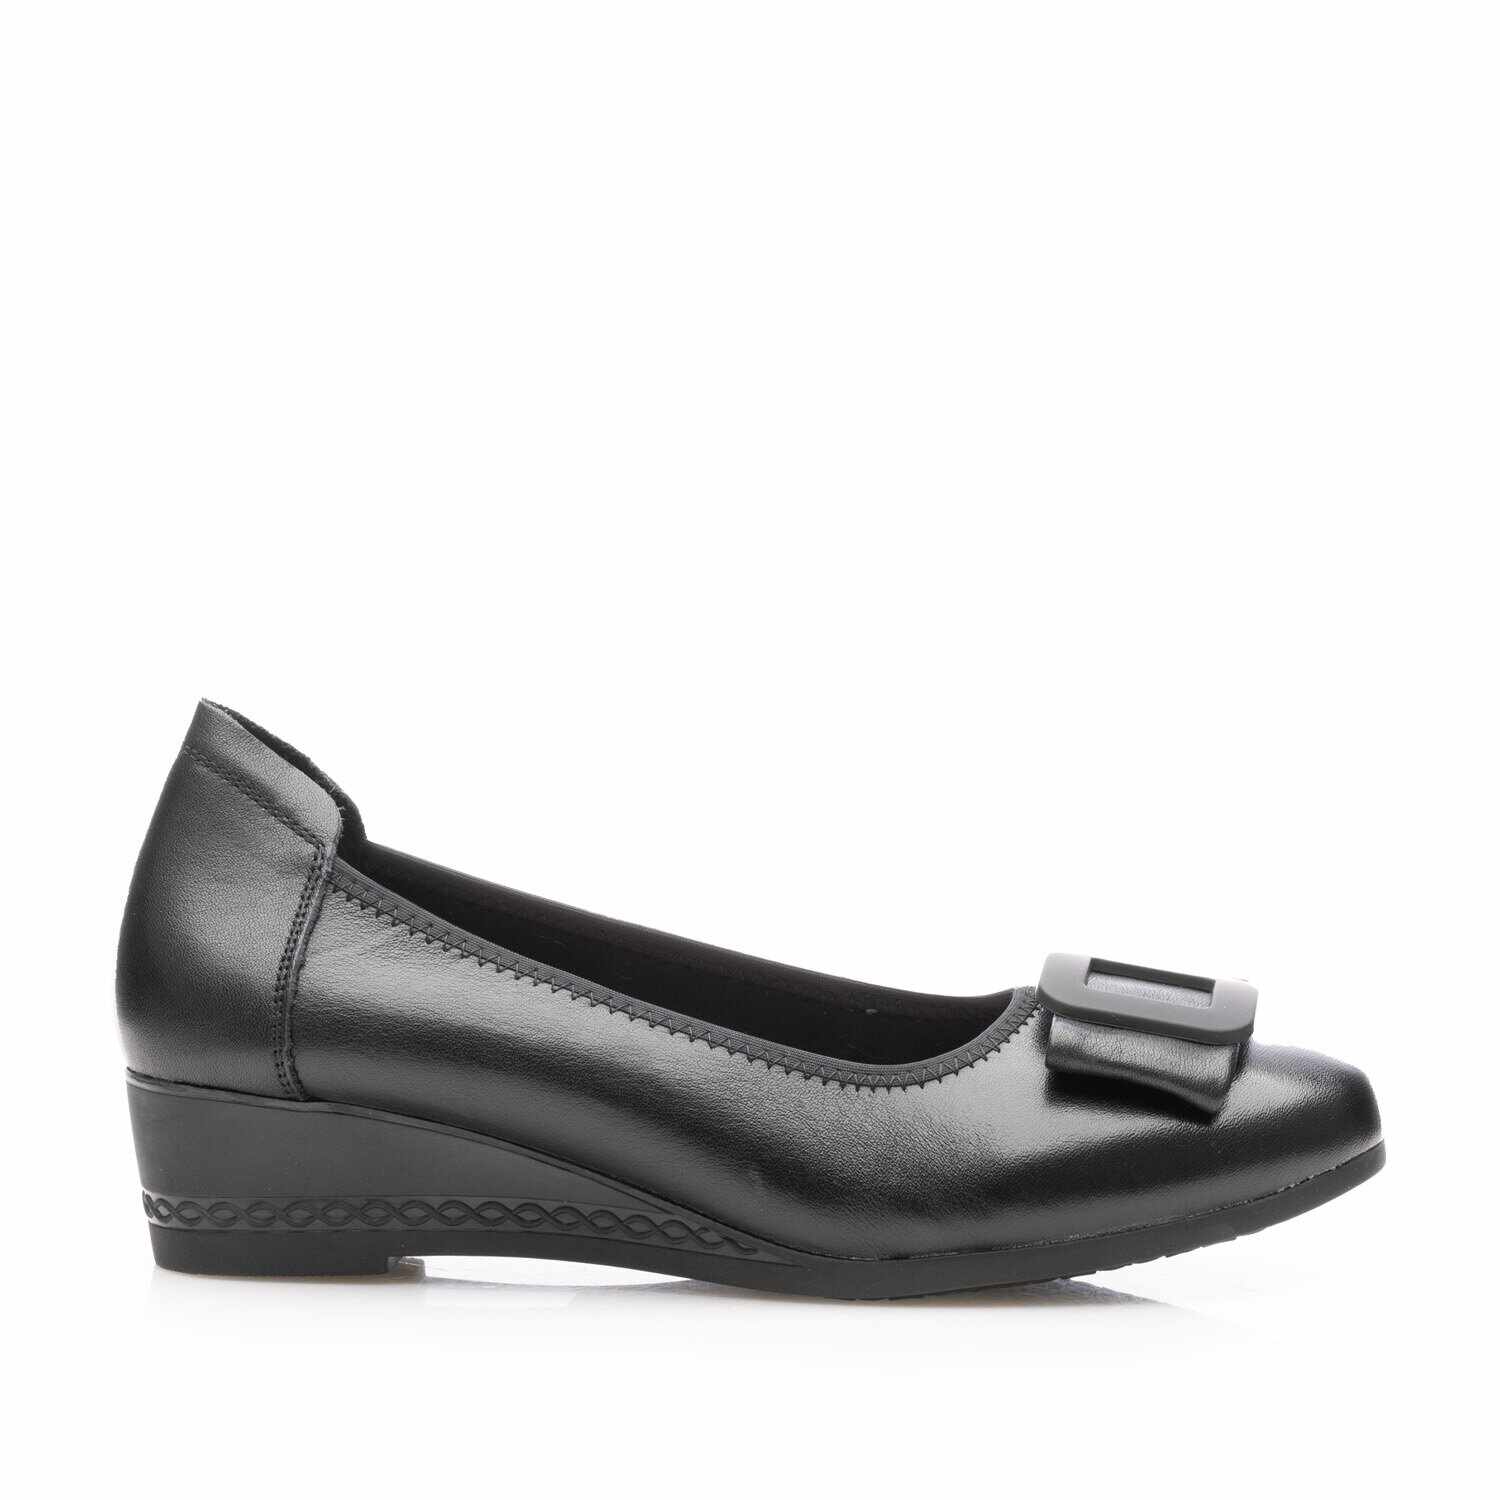 Pantofi casual damă cu platformă din piele naturală - 4409 Negru Box